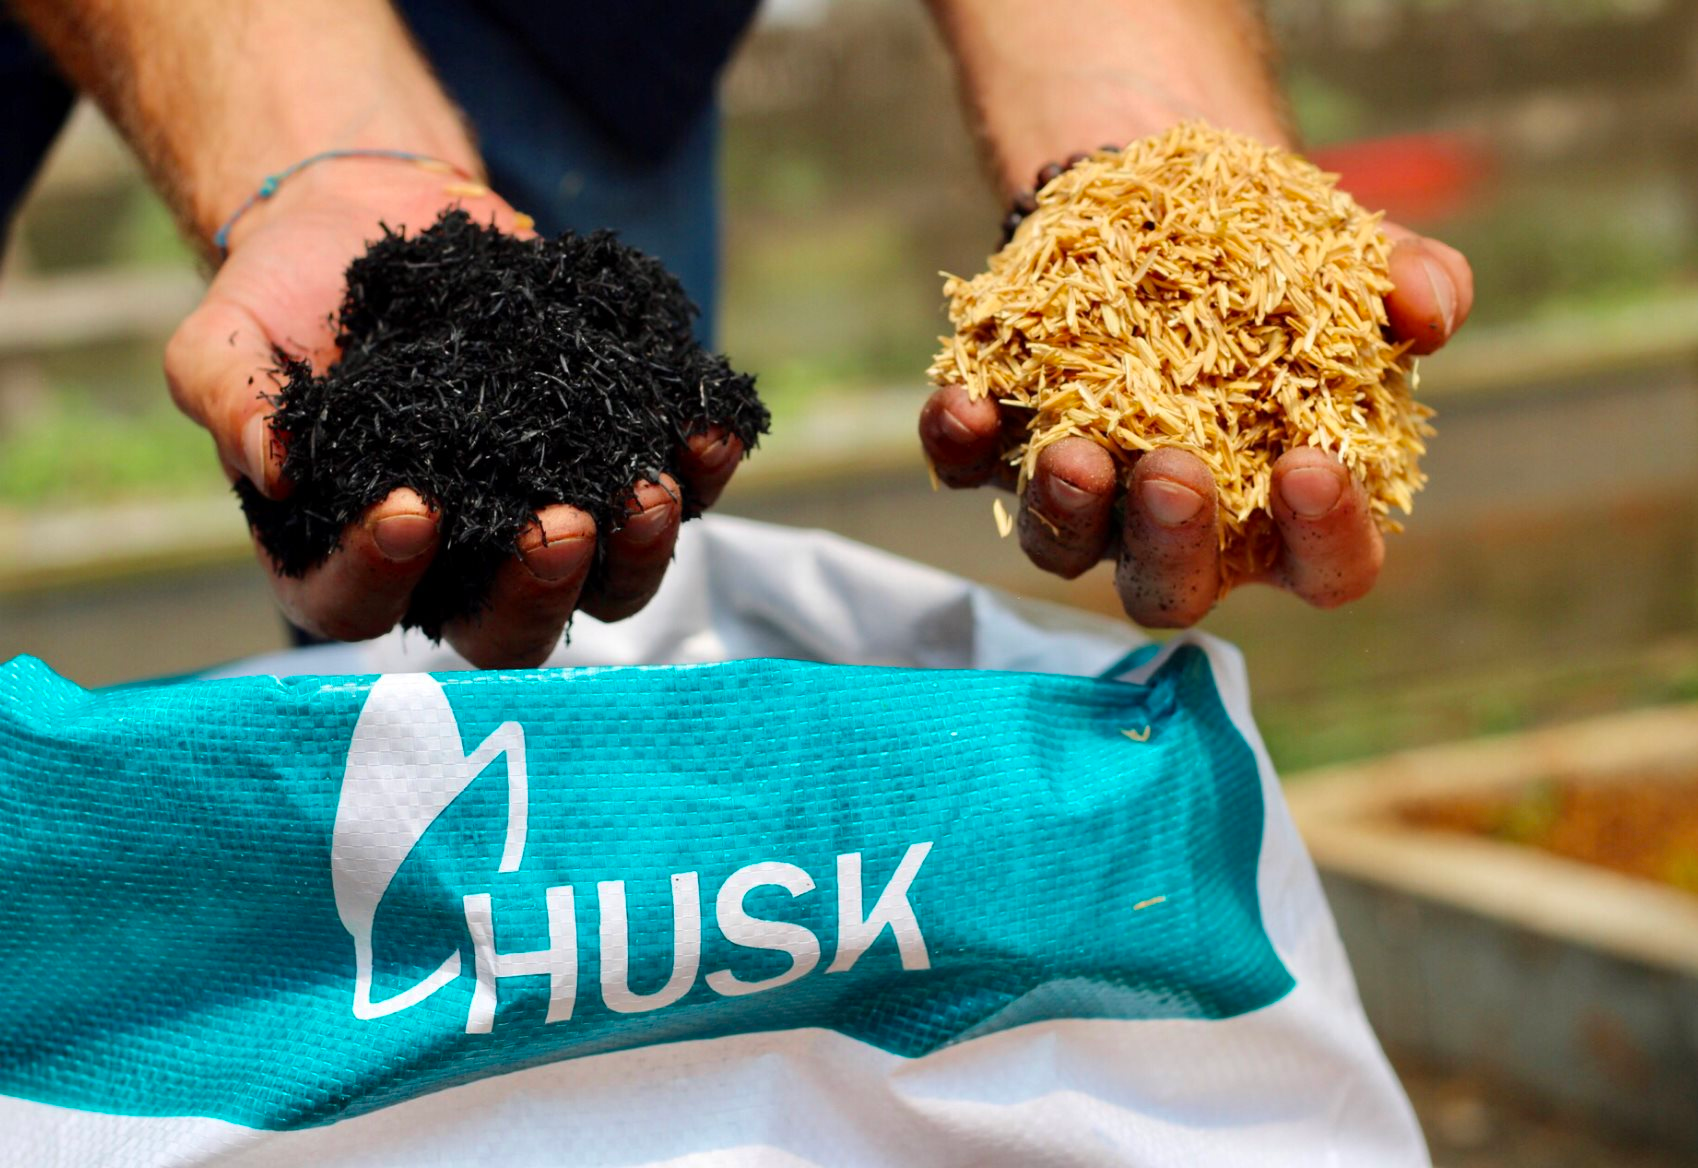 Quỹ Mekong Enterprise Fund IV rót 5 triệu USD vào HUSK, đề tham vọng đưa Việt Nam dẫn đầu giảm thiểu carbon trong chuỗi giá trị cà phê, lúa gạo